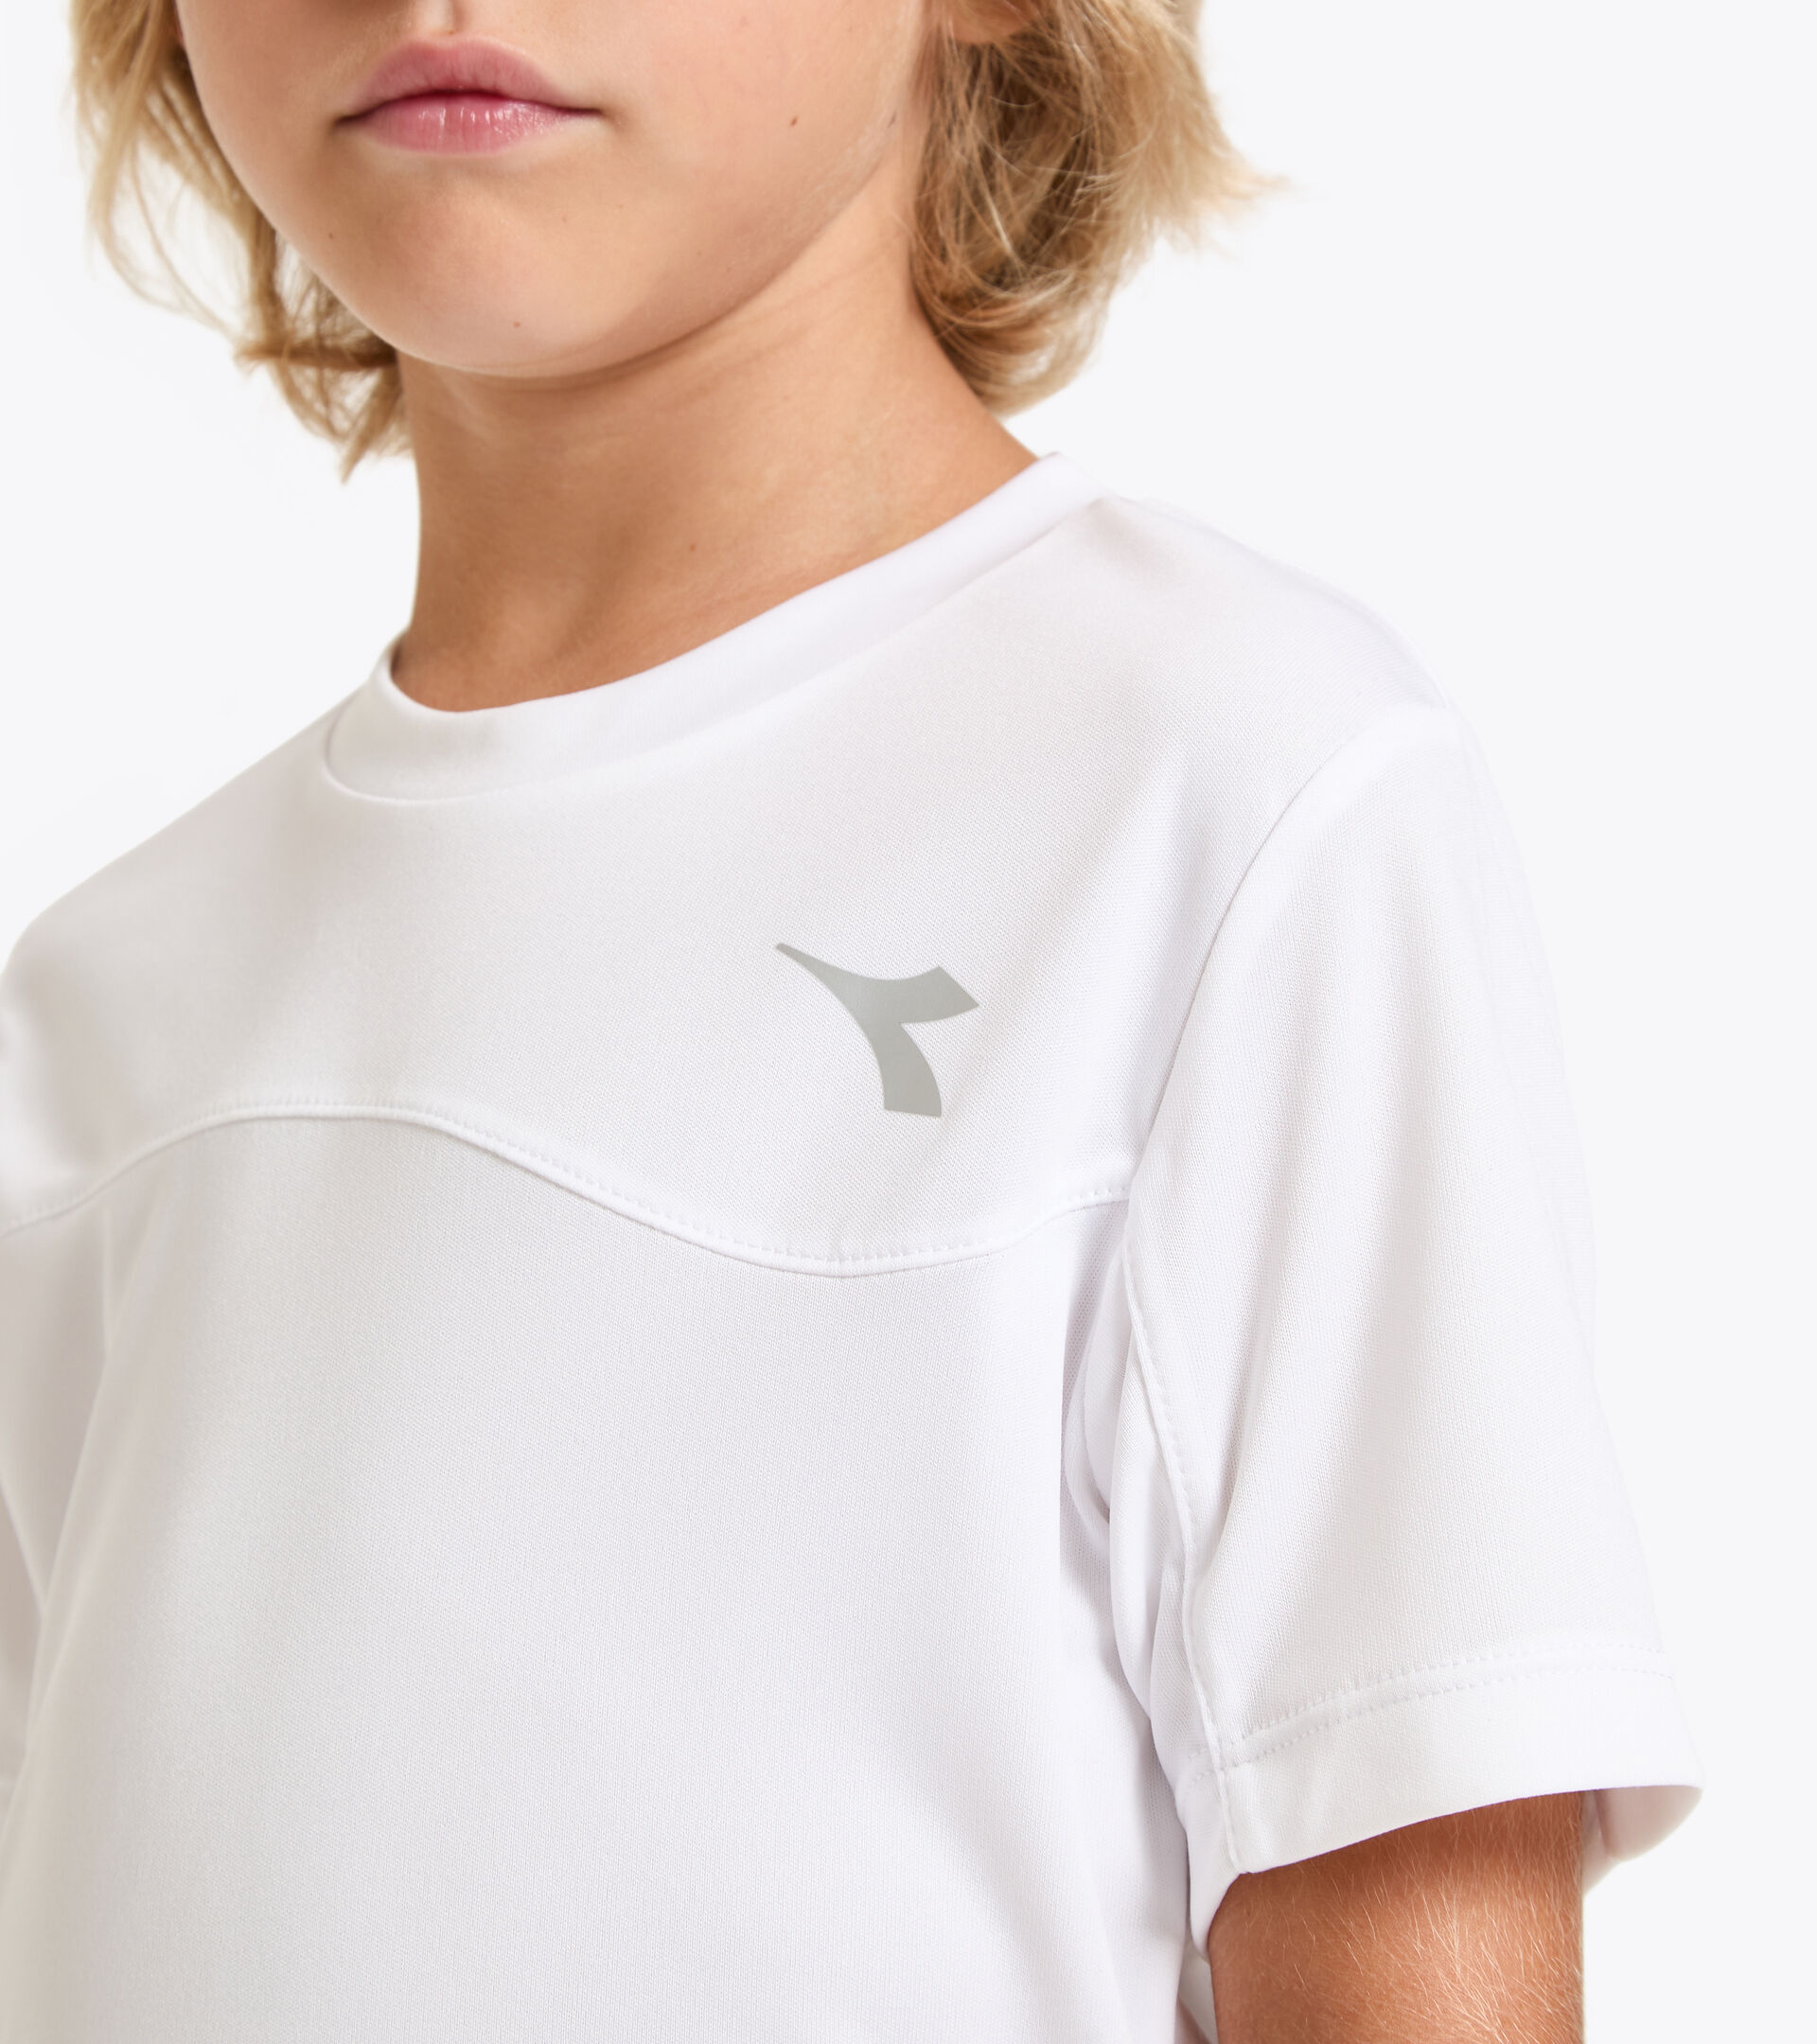 Tennis T-shirt - Junior J. T-SHIRT TEAM OPTICAL WHITE - Diadora